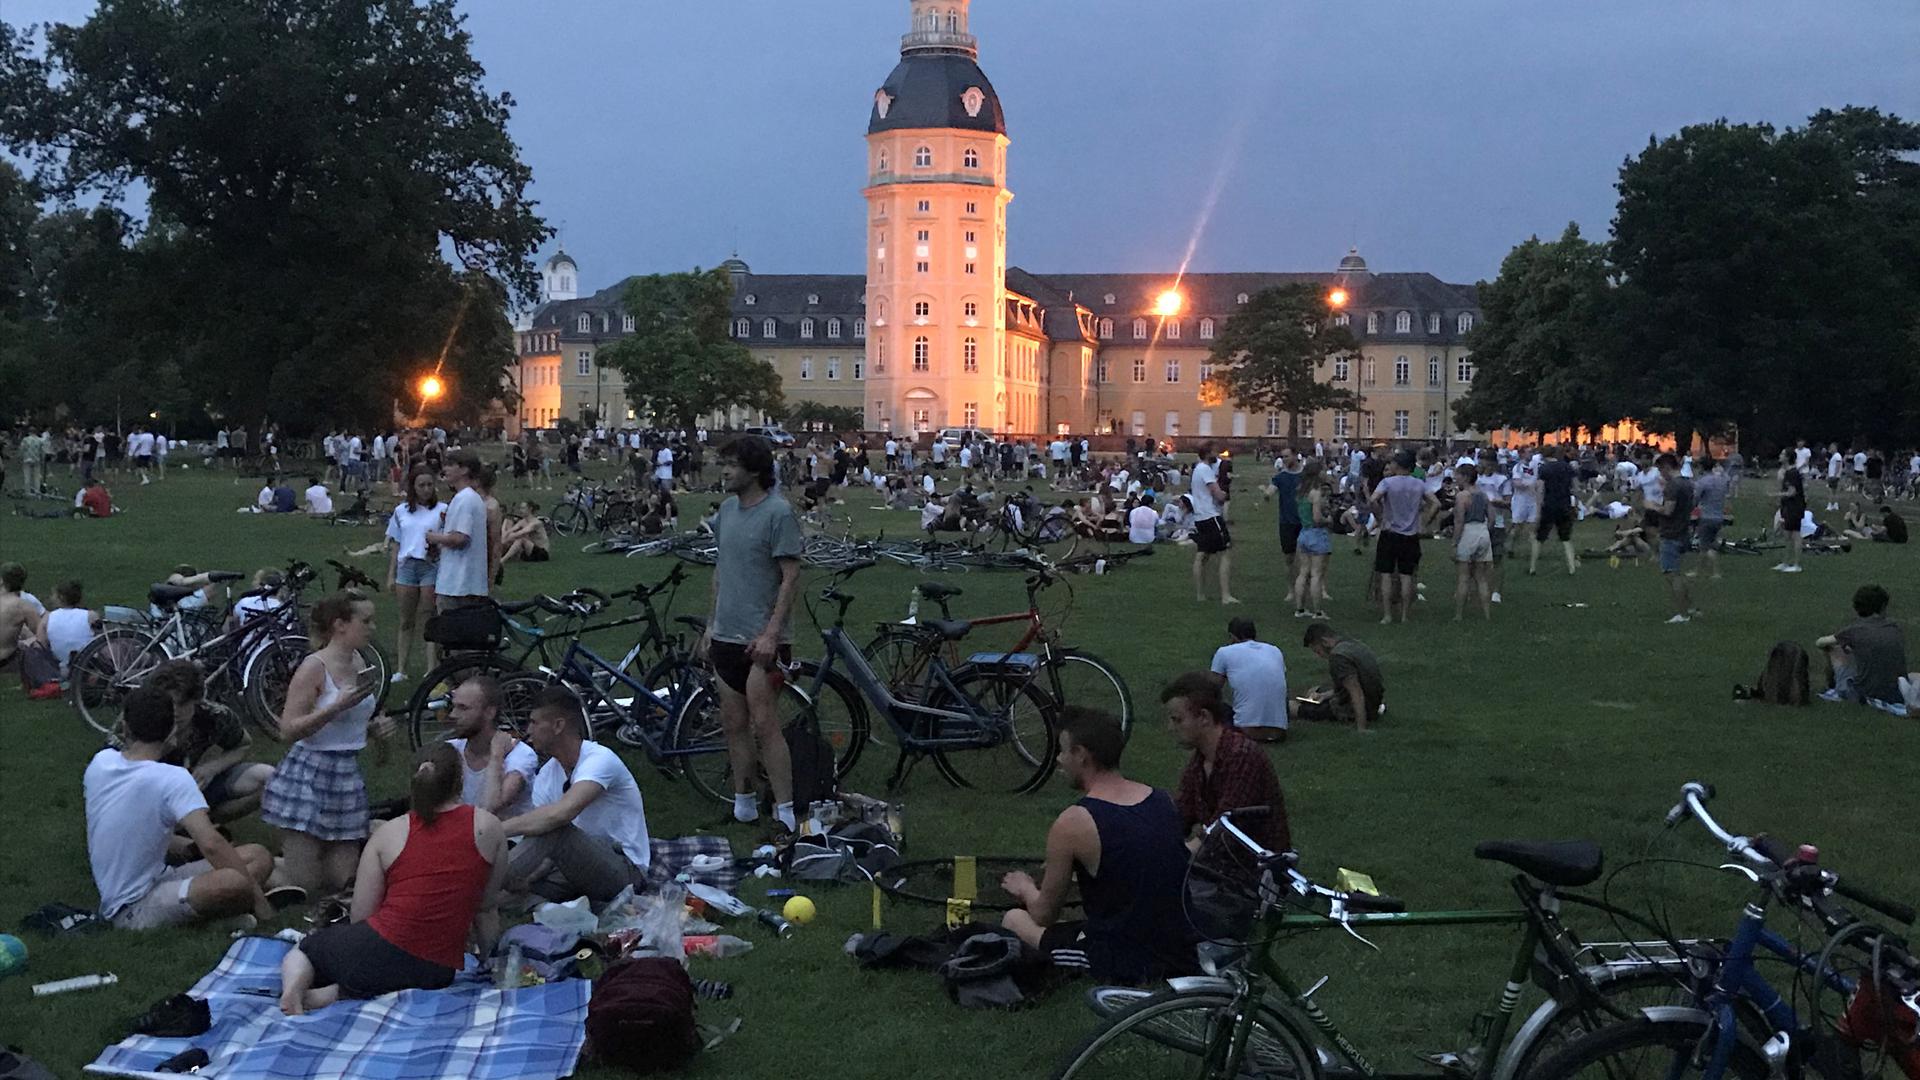 Feierstimmung: Mehrere hundert junge Leute halten sich am Samstag Abend in ausgelassener Stimmung im Schlossgarten auf. Die Polizei wird sie später zum Verlassen des Geländes auffordern.